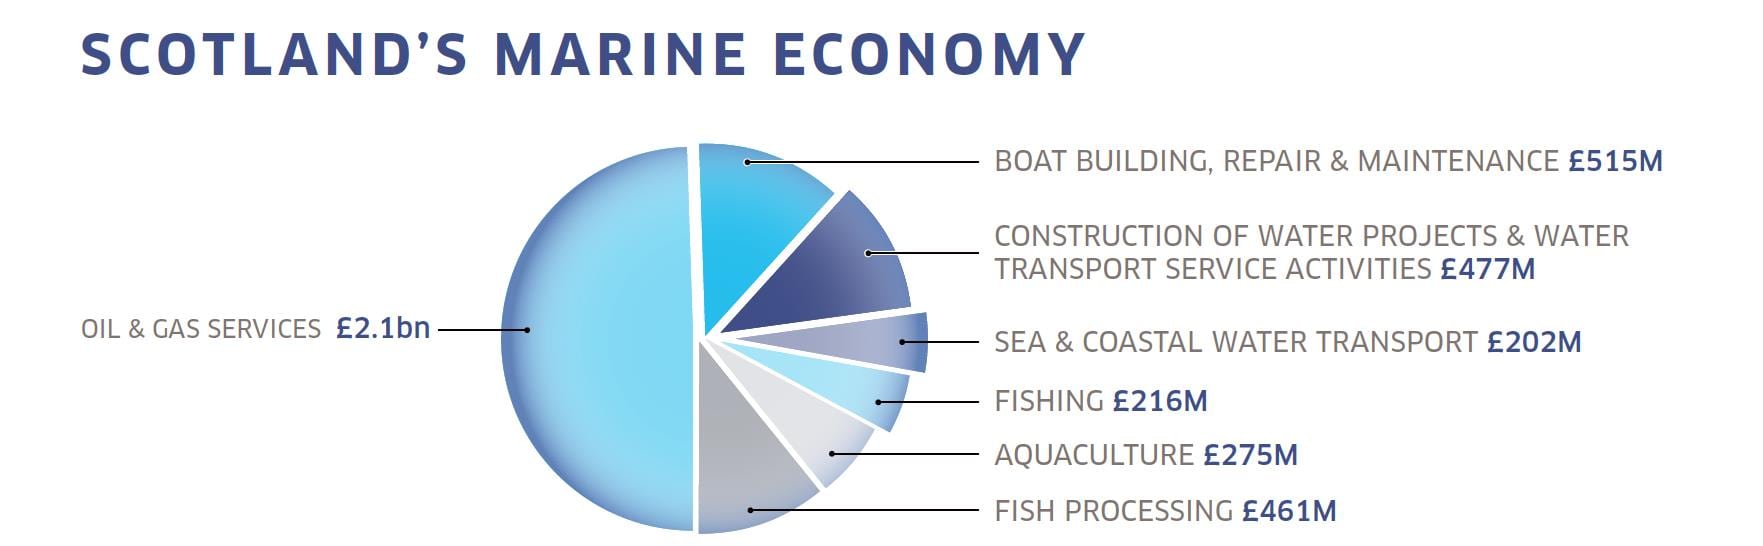 Scotland's Marine Economy